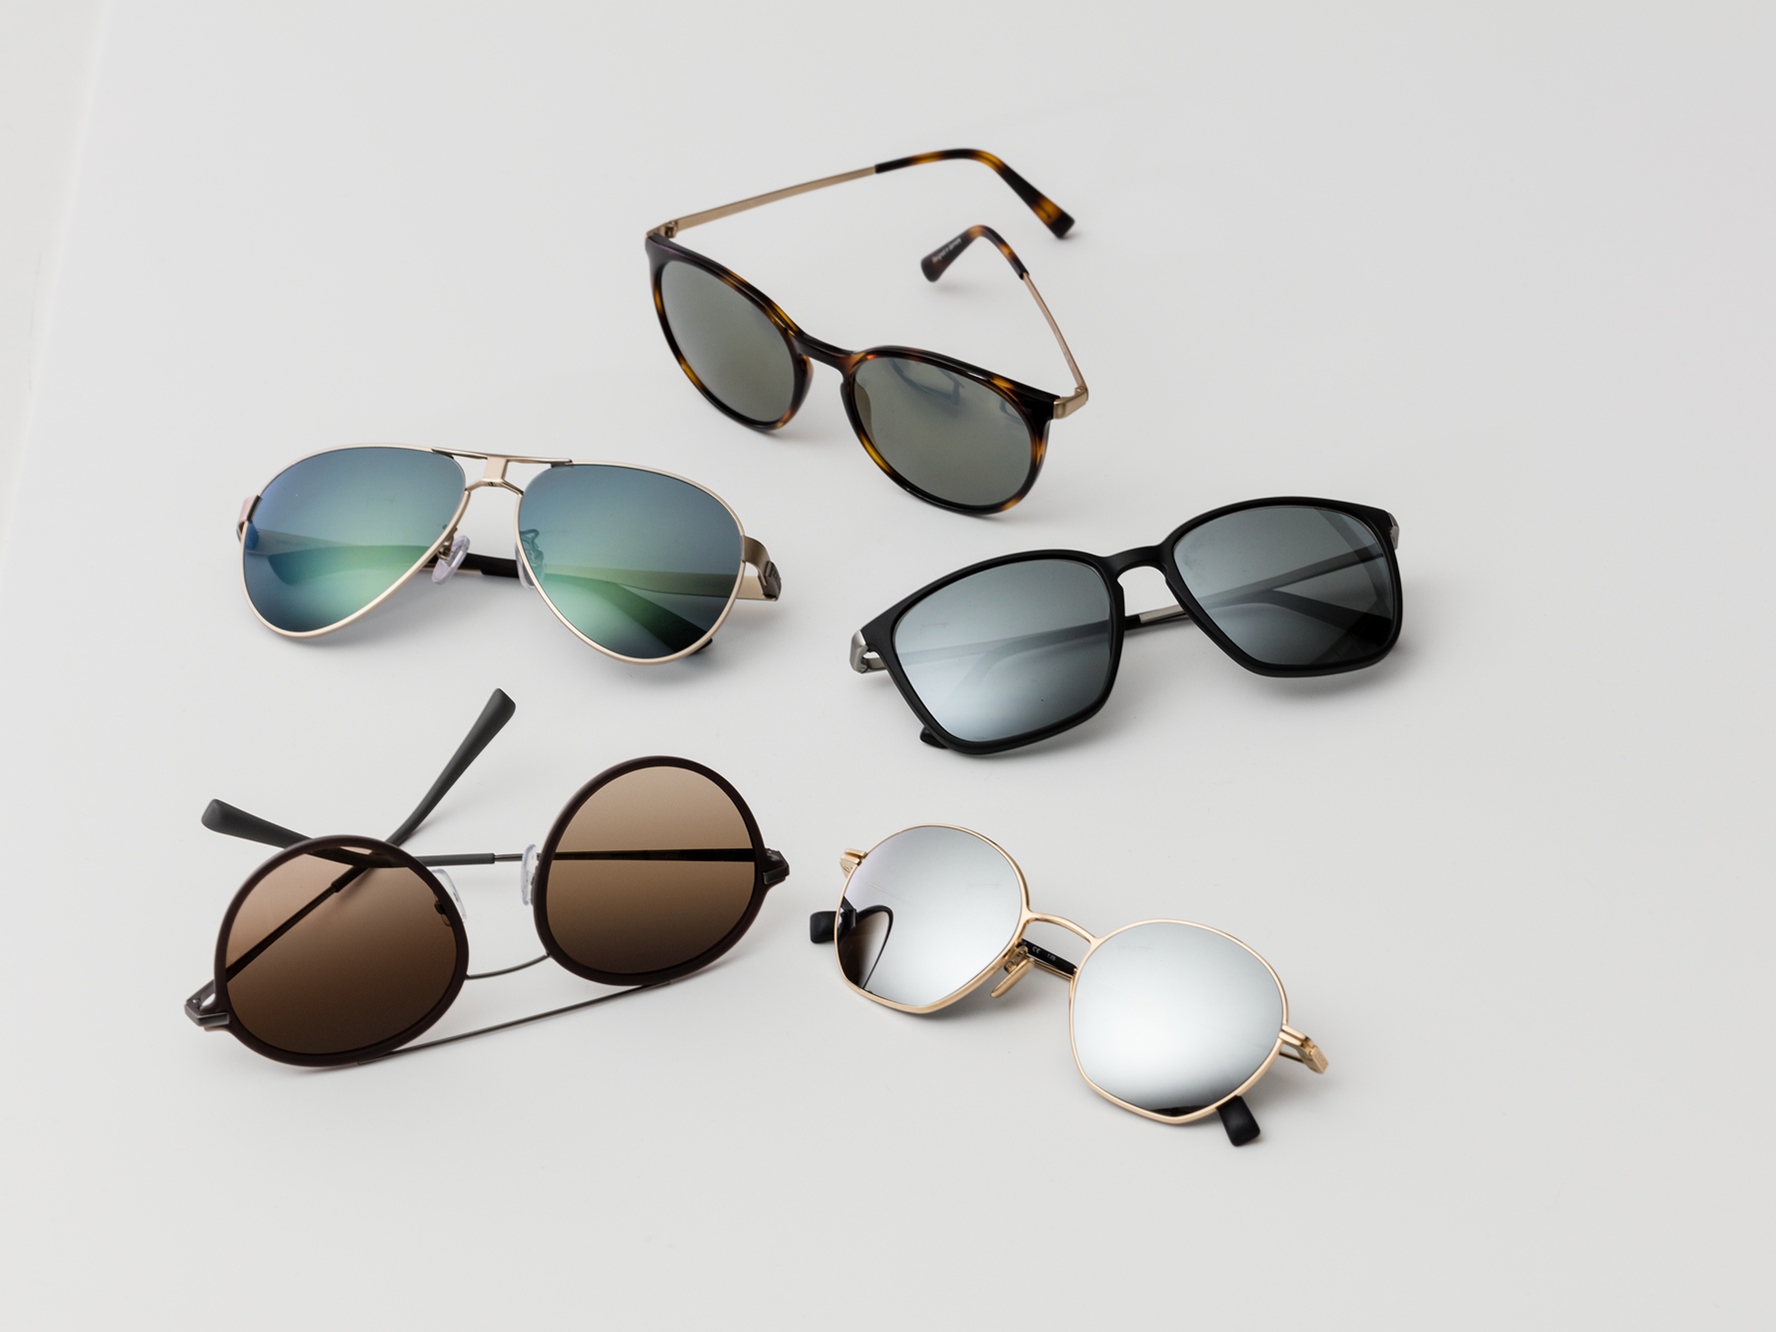 Vijf paar zonnebrillen met de klassieke zonwerende kleuren voor gemiddeld fel tot fel licht.